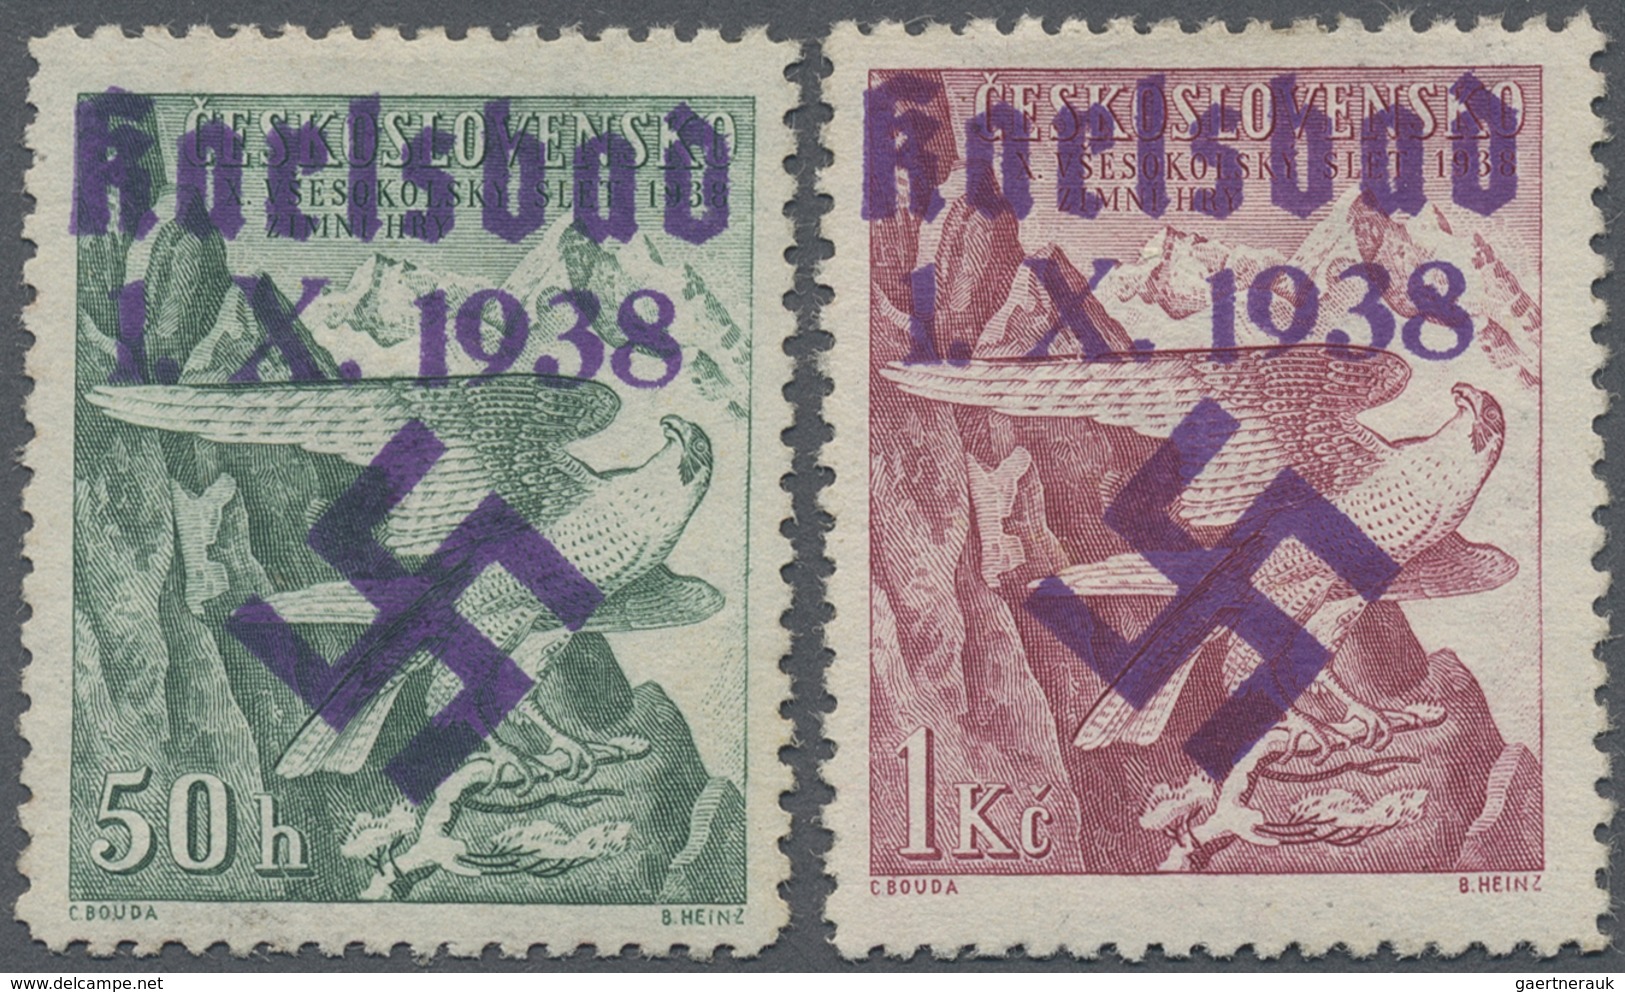 * Sudetenland - Karlsbad: 1938, Sokol-Winterspiele, 50 H. Und 2 Kr., Mit Handstempelaufdruck "Karlsbad - Sudetenland